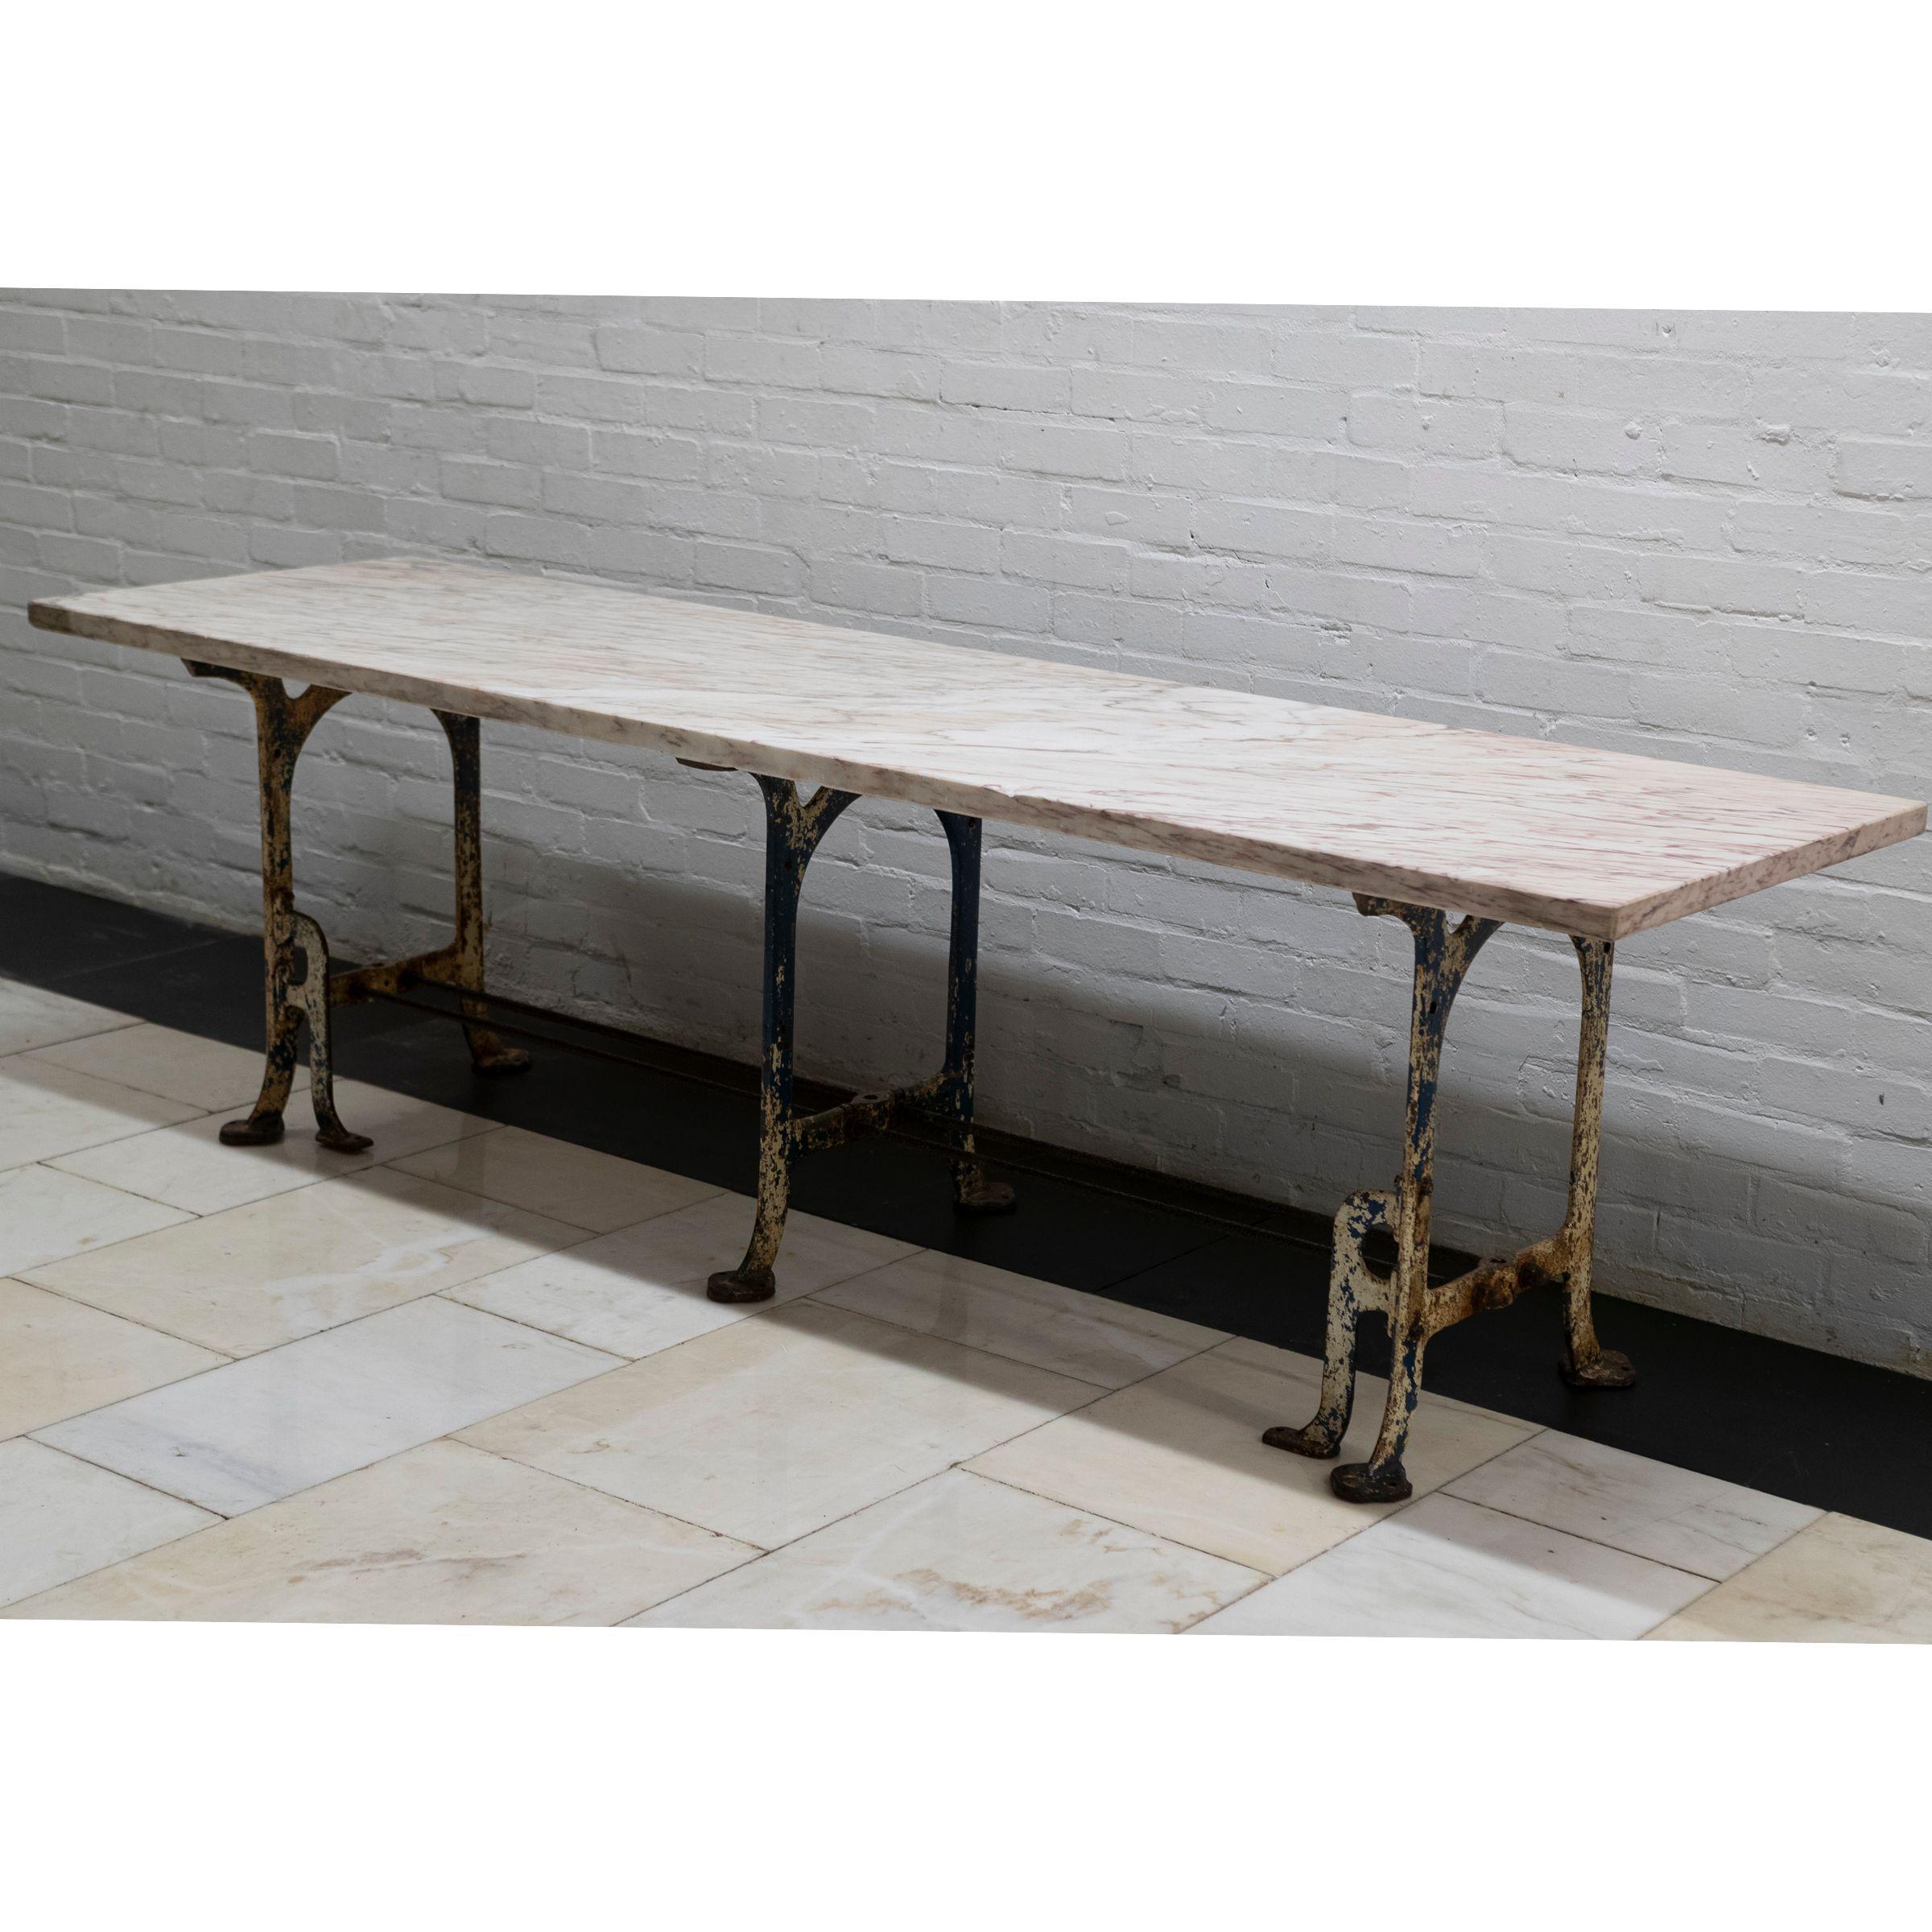 Unique en son genre, cette table est construite à partir d'un grand morceau de marbre brèche rose énigmatique qui repose sur une base industrielle en fonte.

Cette grande table constitue une table de salle à manger unique et intéressante pour la